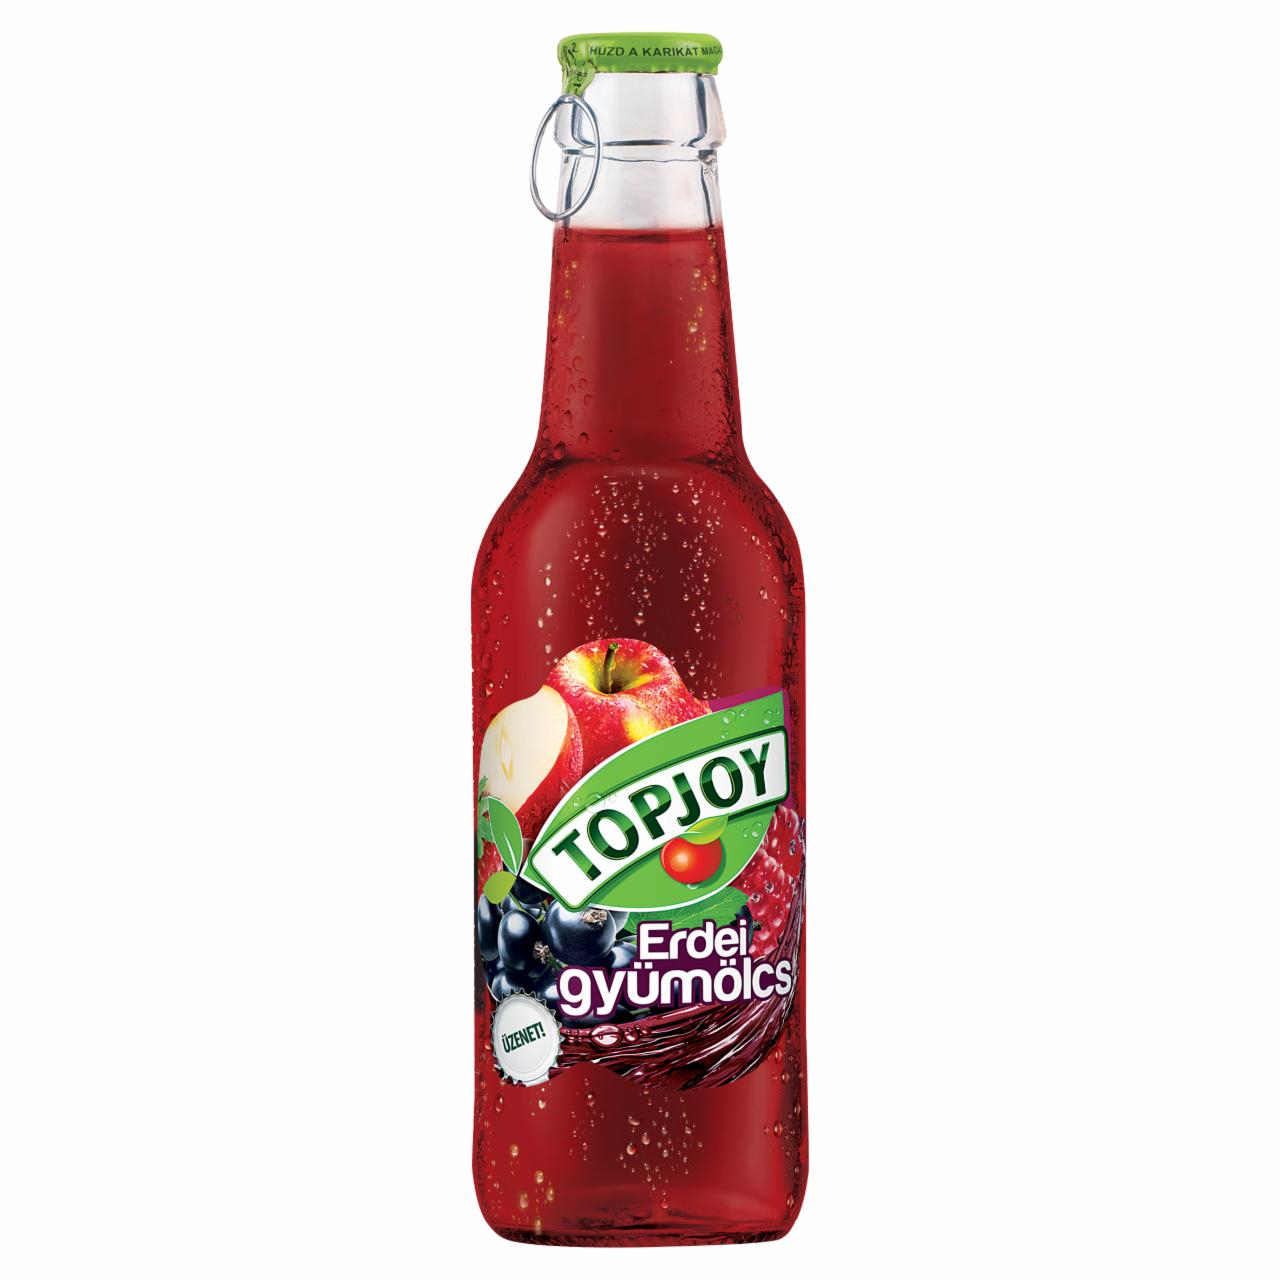 Képek - Topjoy erdei gyümölcs ital 250 ml